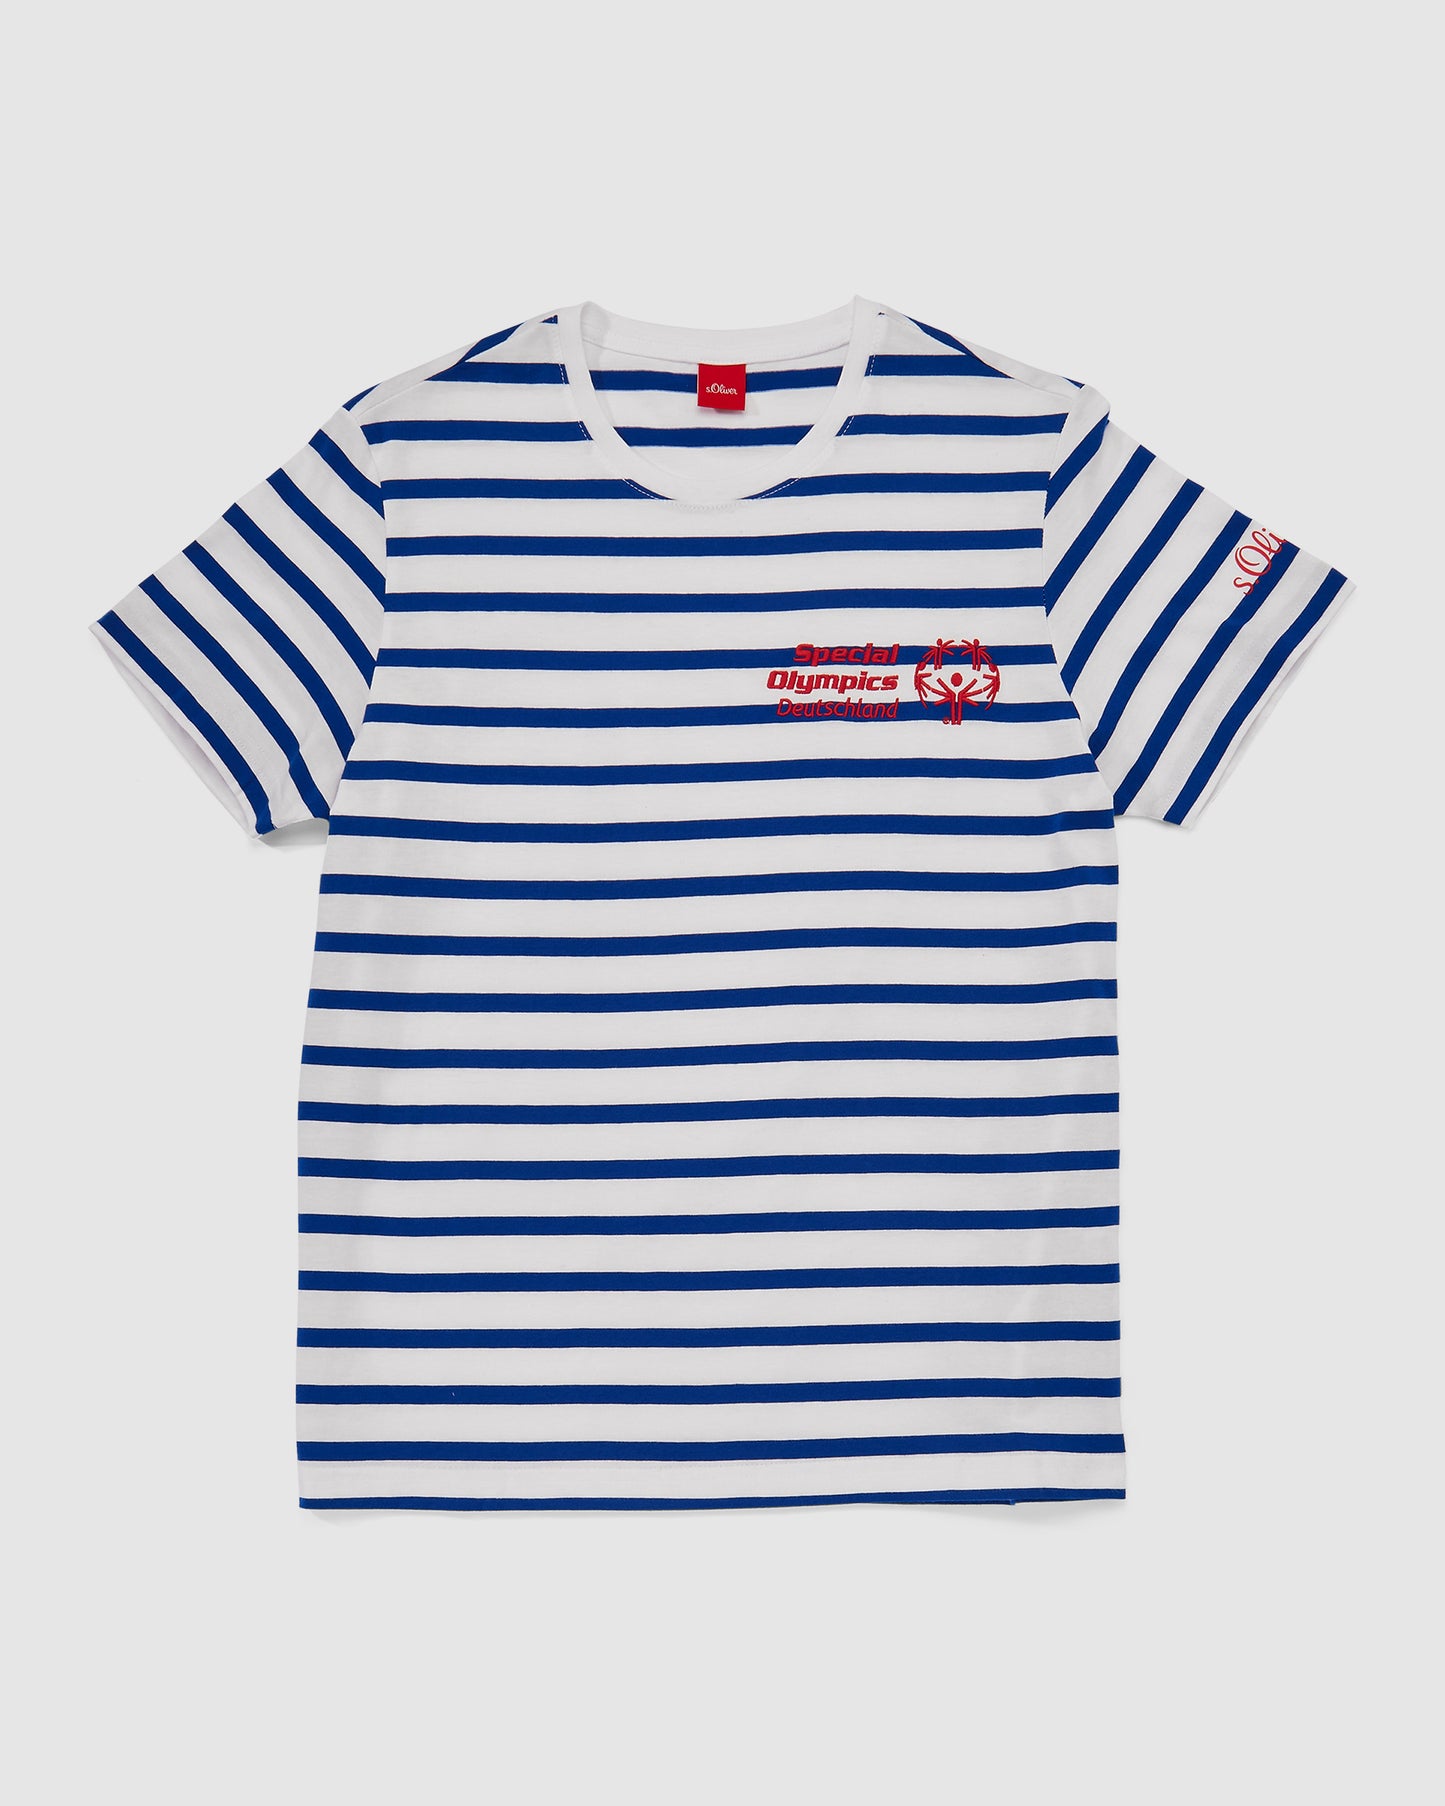 Gestreiftes T-Shirt von S-Oliver mit kleinem Special Olympics Deutschland Logo